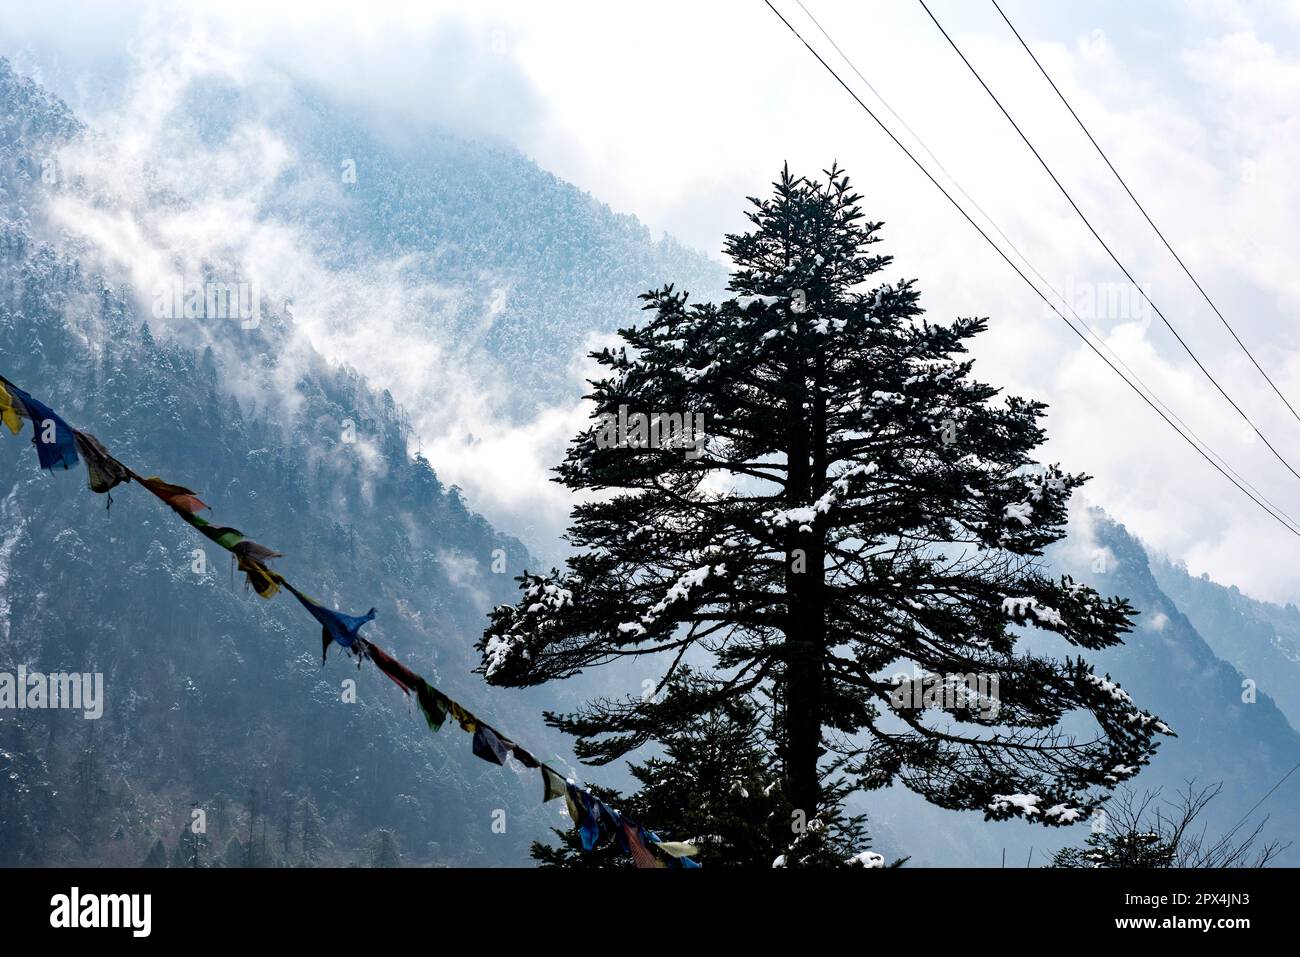 Yumthang Valley, au nord de Sikkim est un paradis sur terre, qui est plein de merveilles naturelles et de beauté pittoresque. Banque D'Images